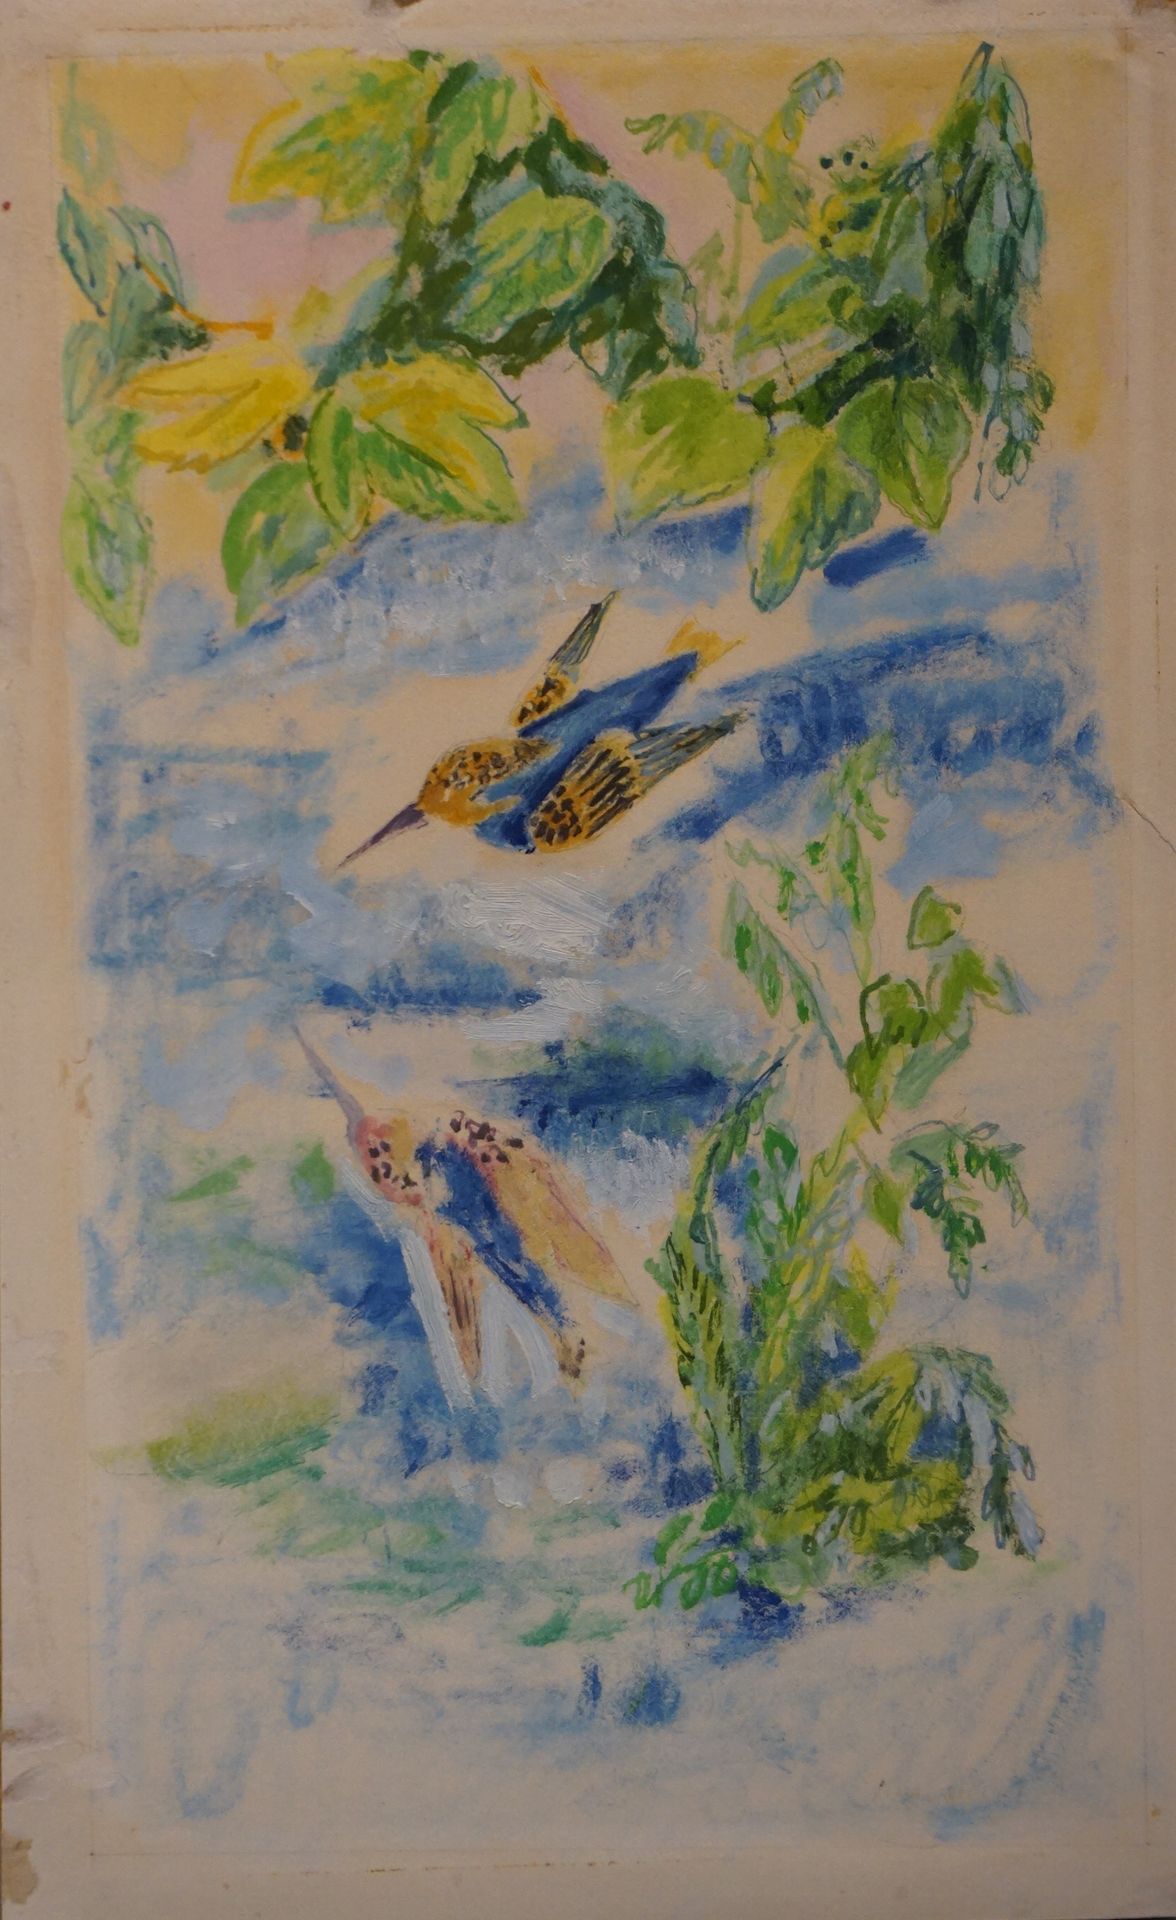 Jules CAVAILLES (1901-1977) "Martín pescador", acuarela, mb. 39x23 cm